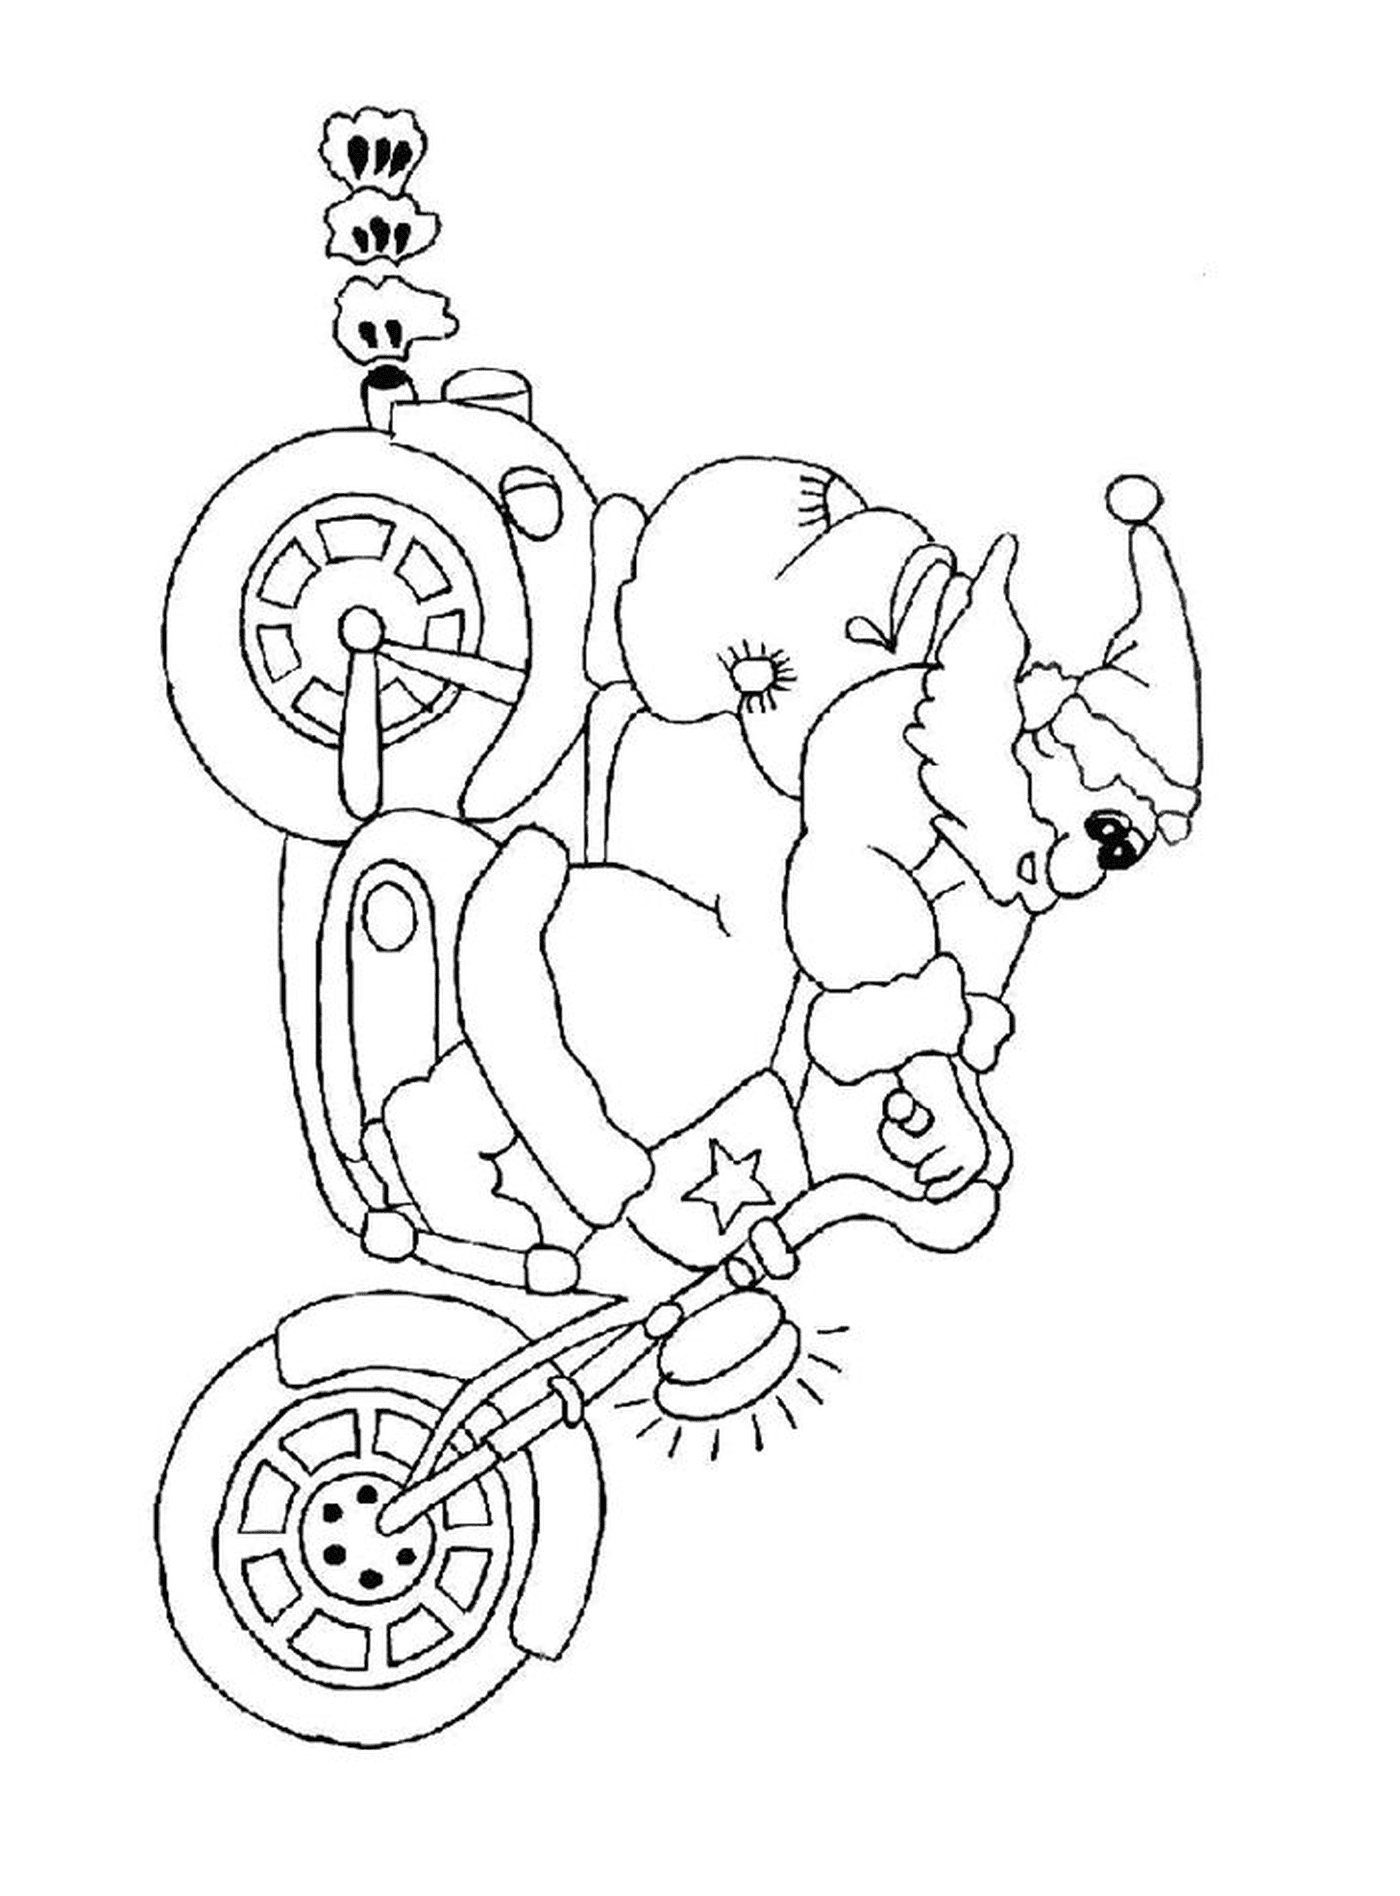  Santa Claus en una motocicleta 